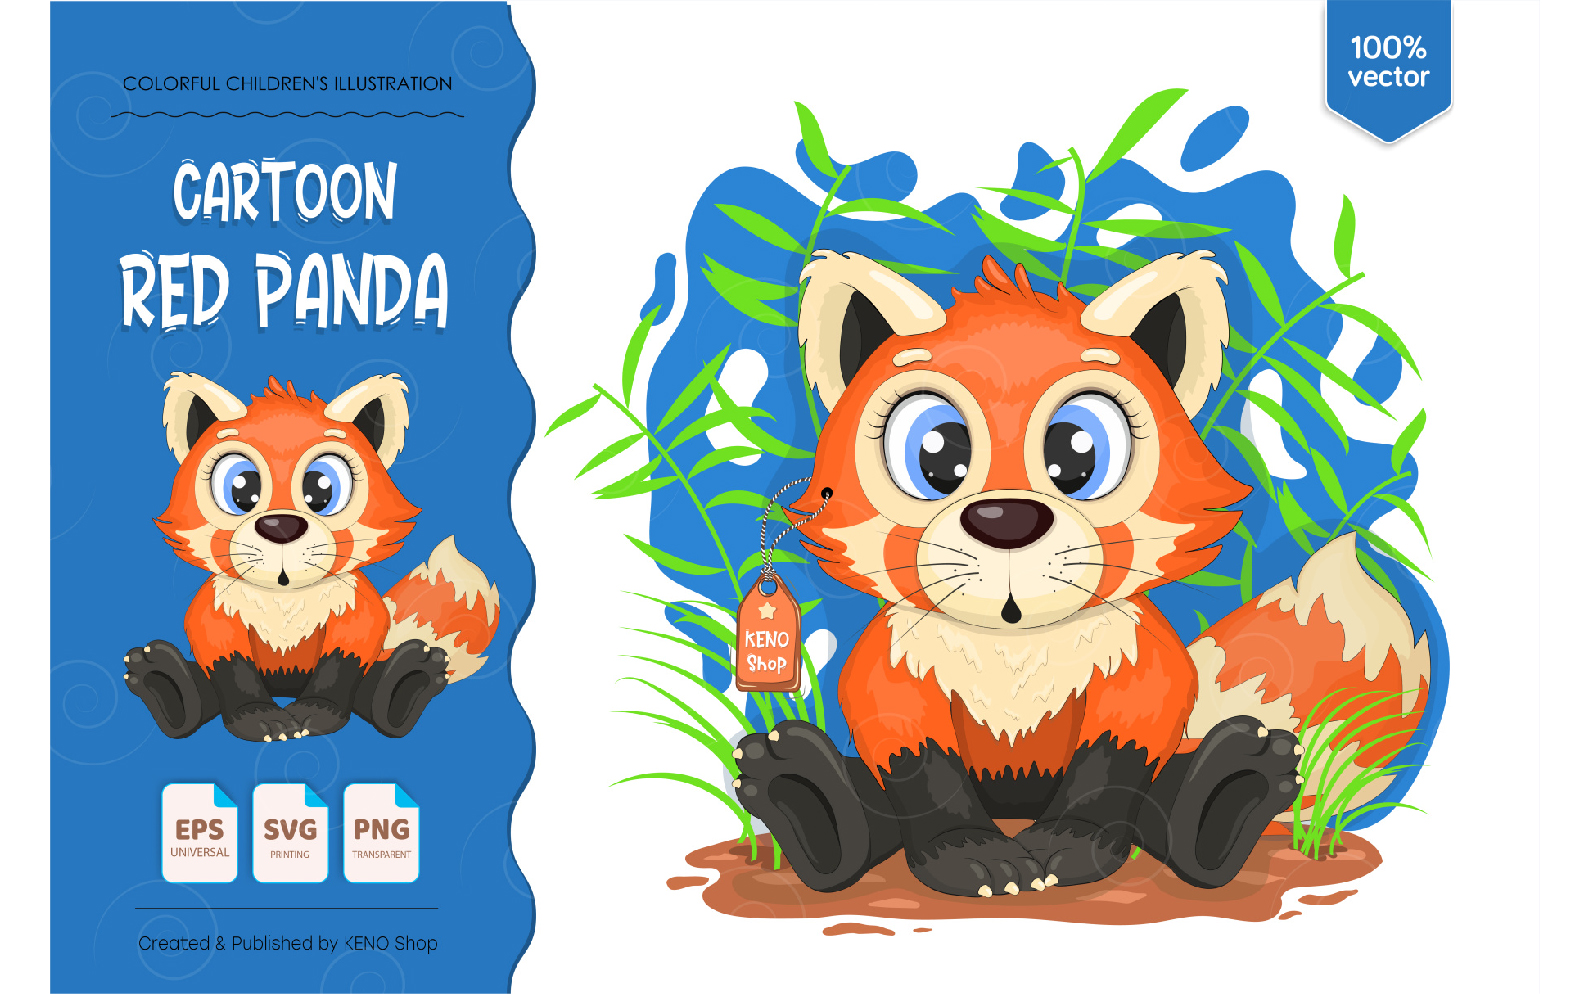 Cute Cartoon Red Panda - Vector Image